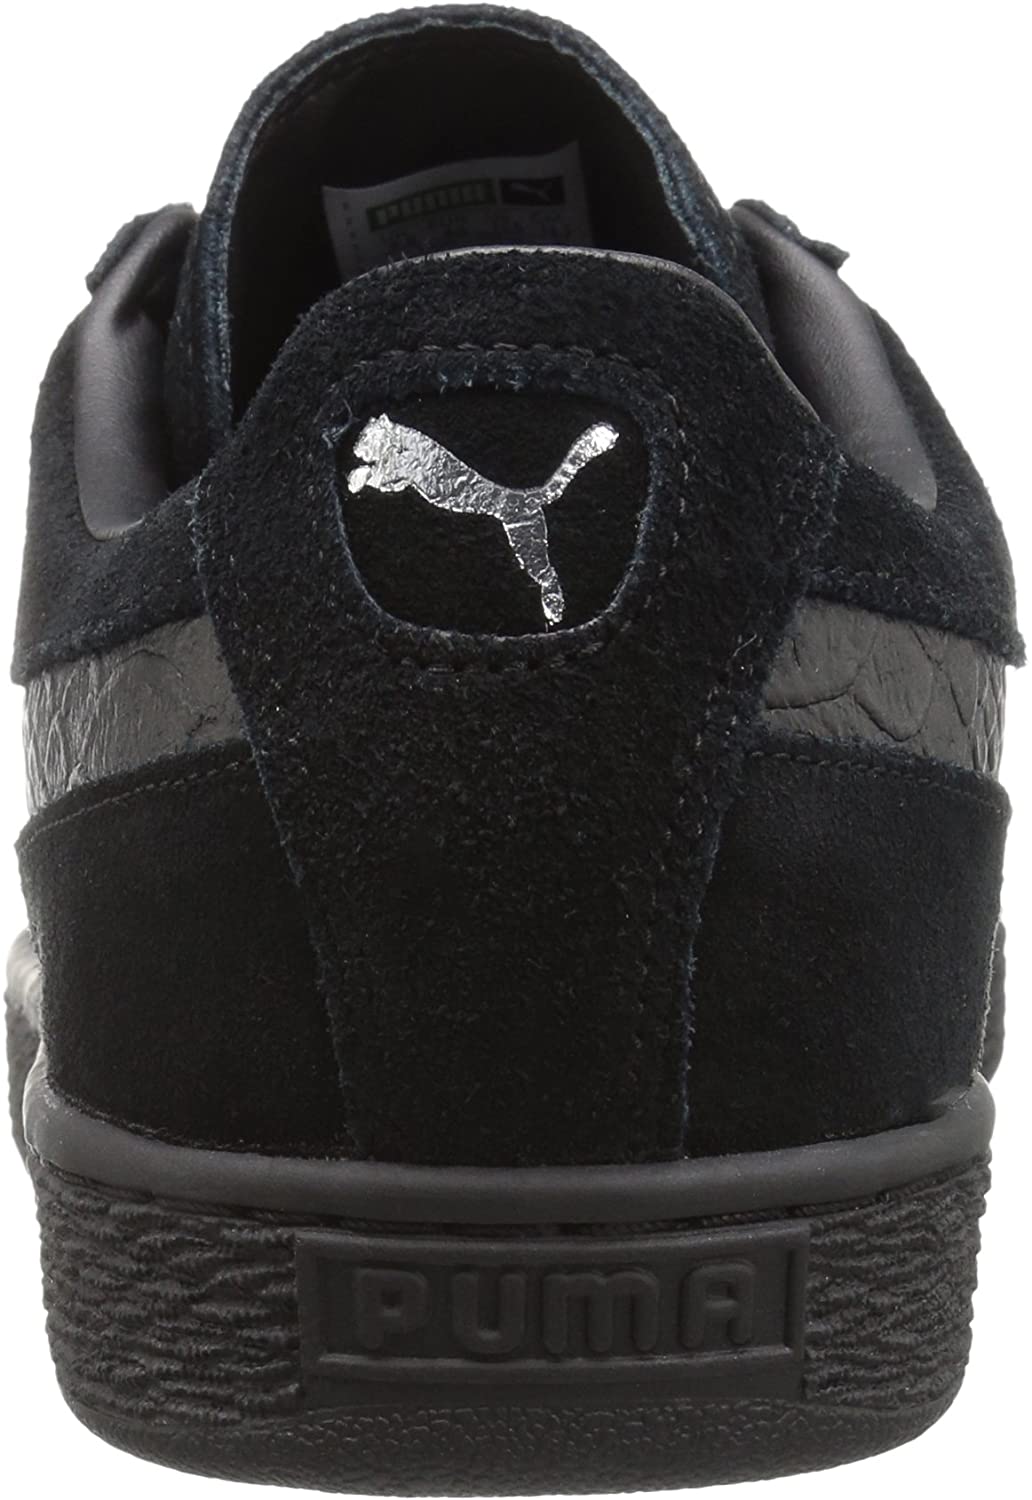 PUMA 363164-06 : Men's Suede Classic Mono Reptile Fashion Sneaker, Black (Puma Black-puma Silv, 8.5 D(M) US) - image 3 of 8